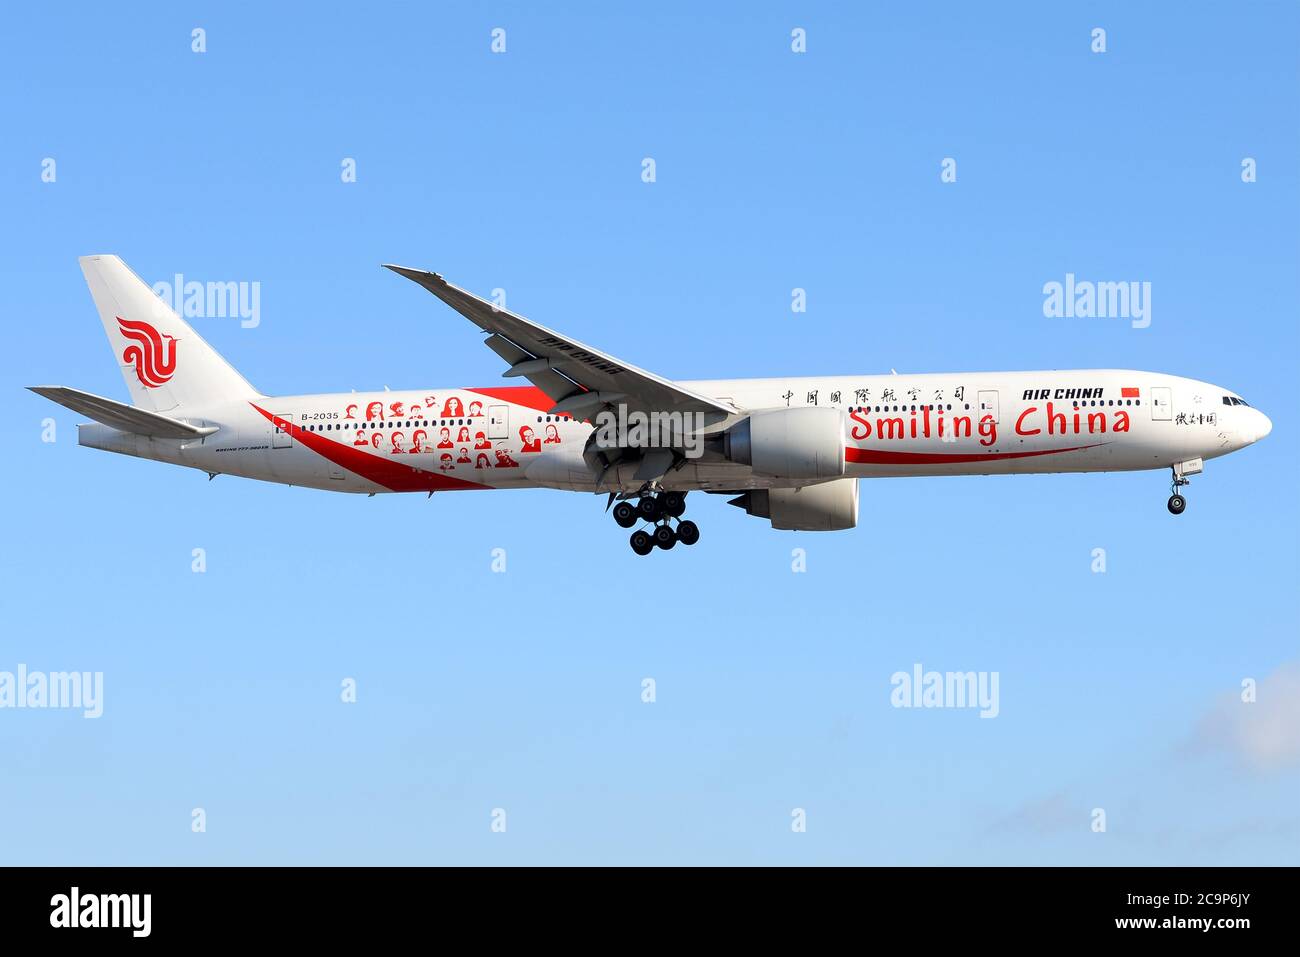 Air China Boeing 777 Ankunft am Flughafen Los Angeles LAX. Flugzeug mit lächelndem China Special Lackierung. Flugzeug 777-300 registriert als B-2035. Stockfoto